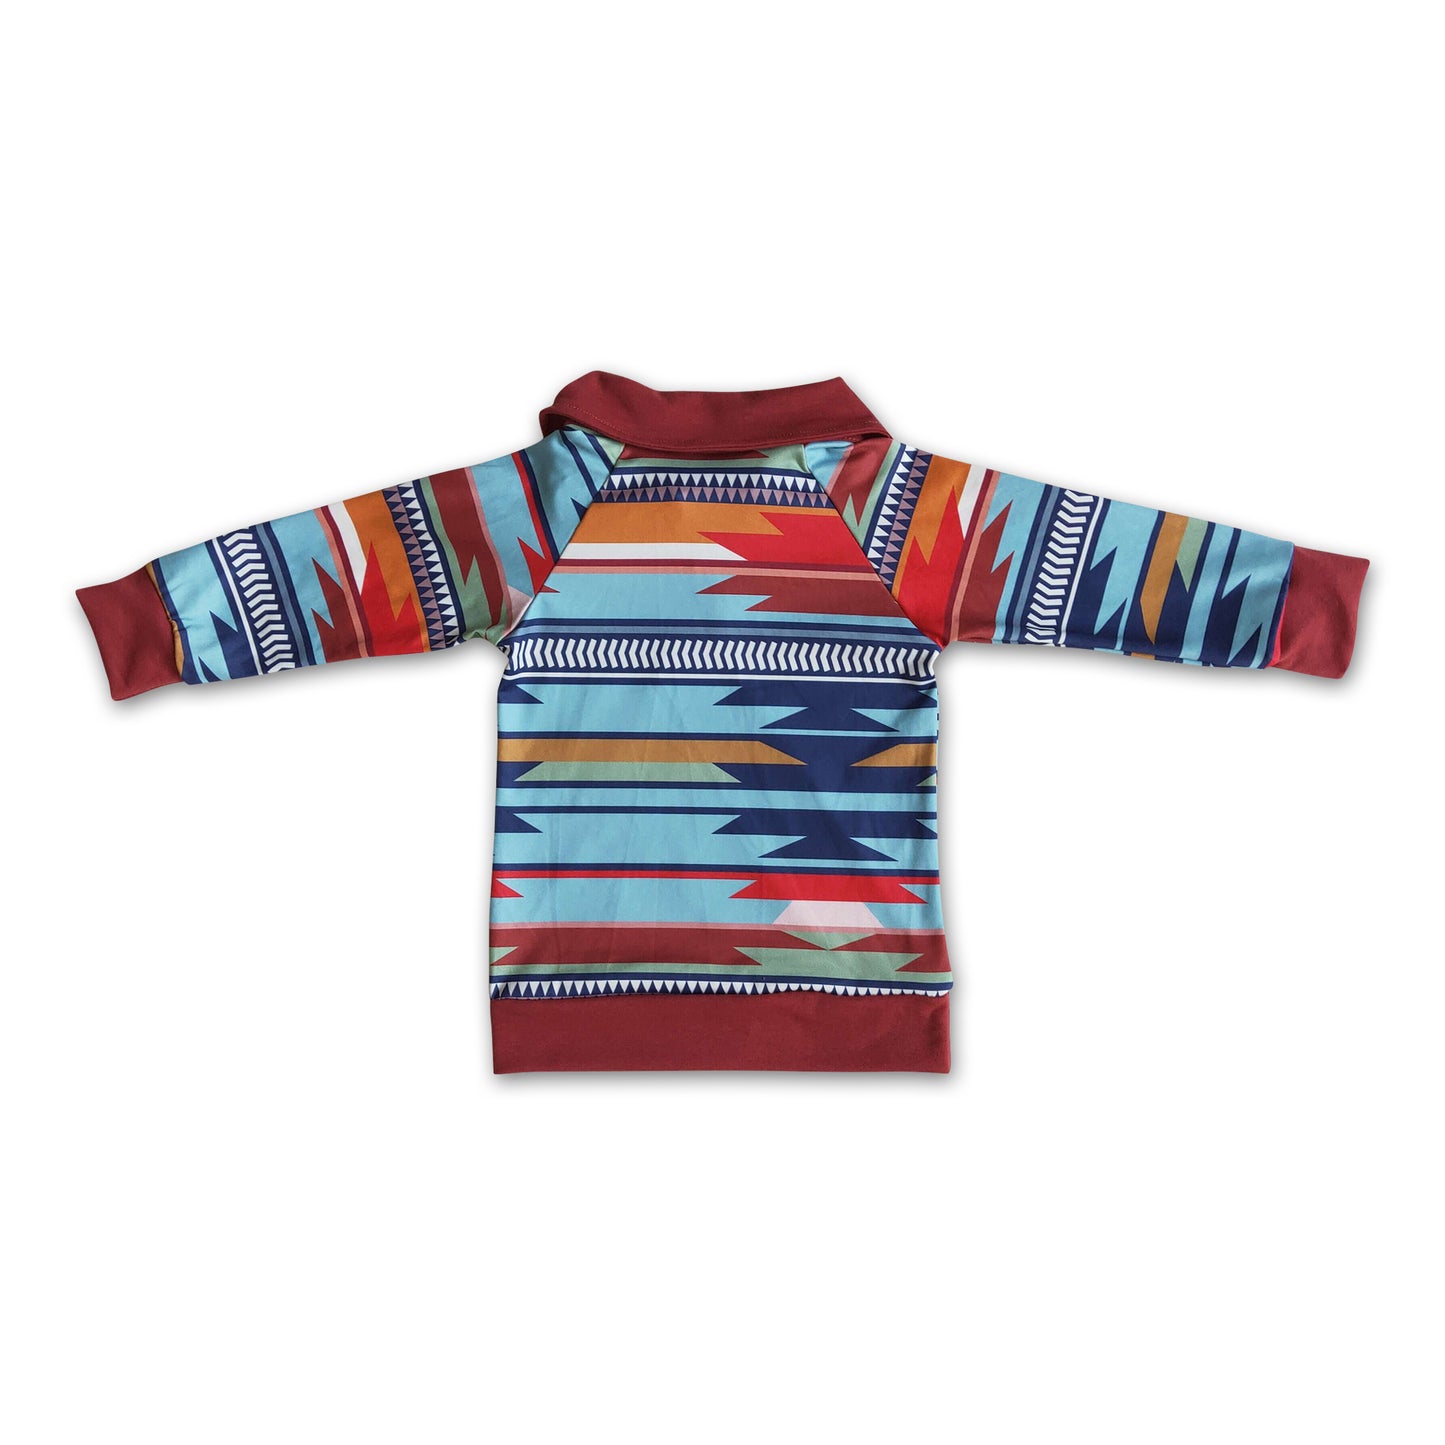 Aztec print long sleeve zipper kids pullover